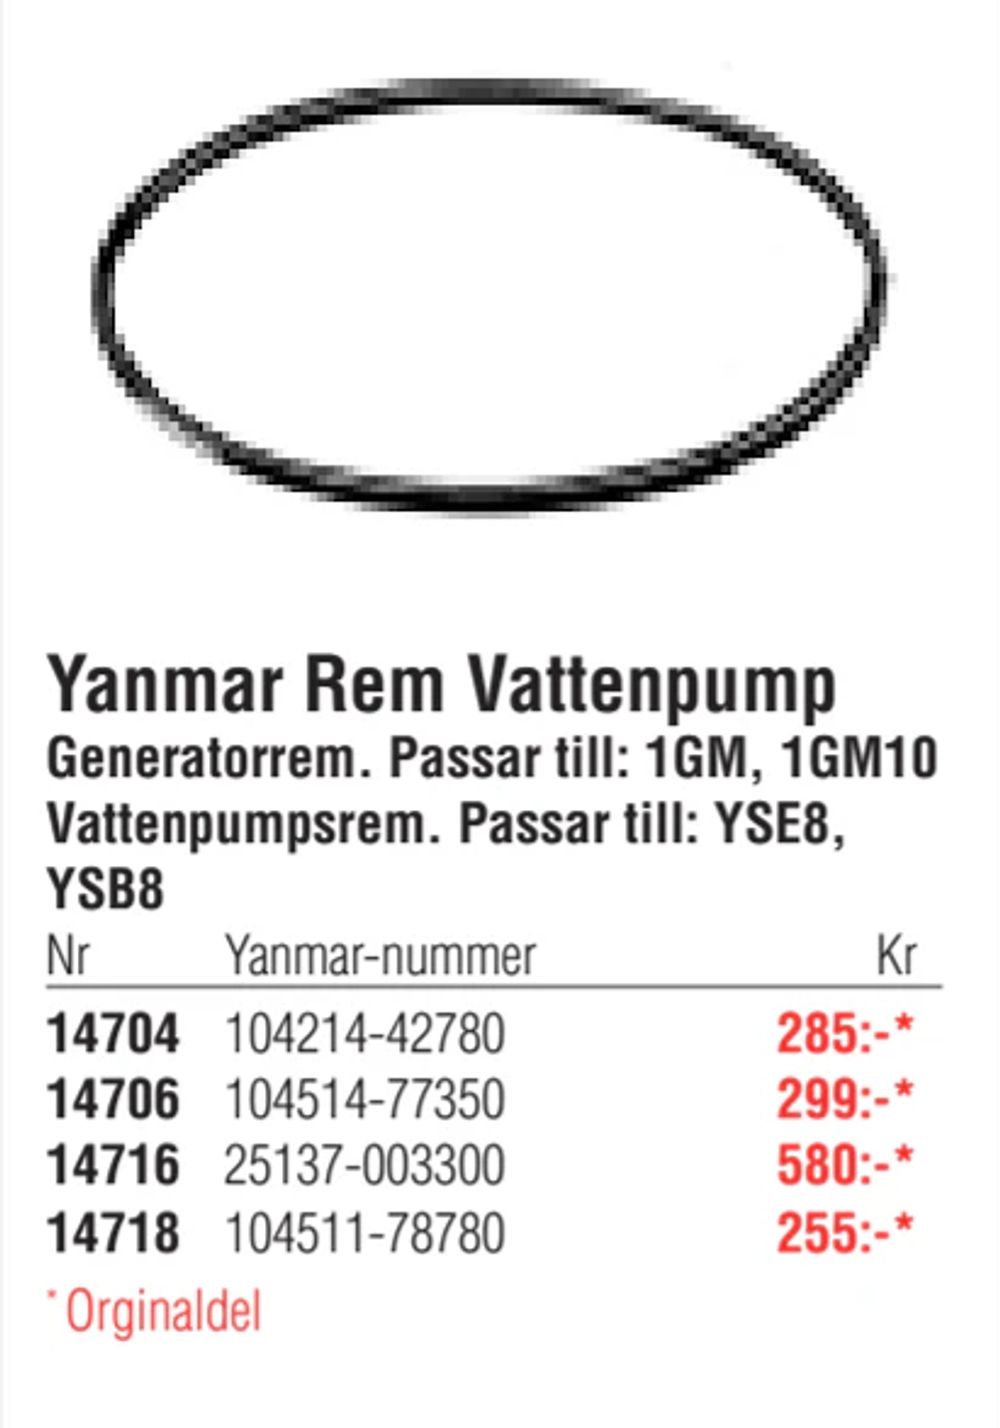 Erbjudanden på Yanmar Rem Vattenpump från Erlandsons Brygga för 255 kr